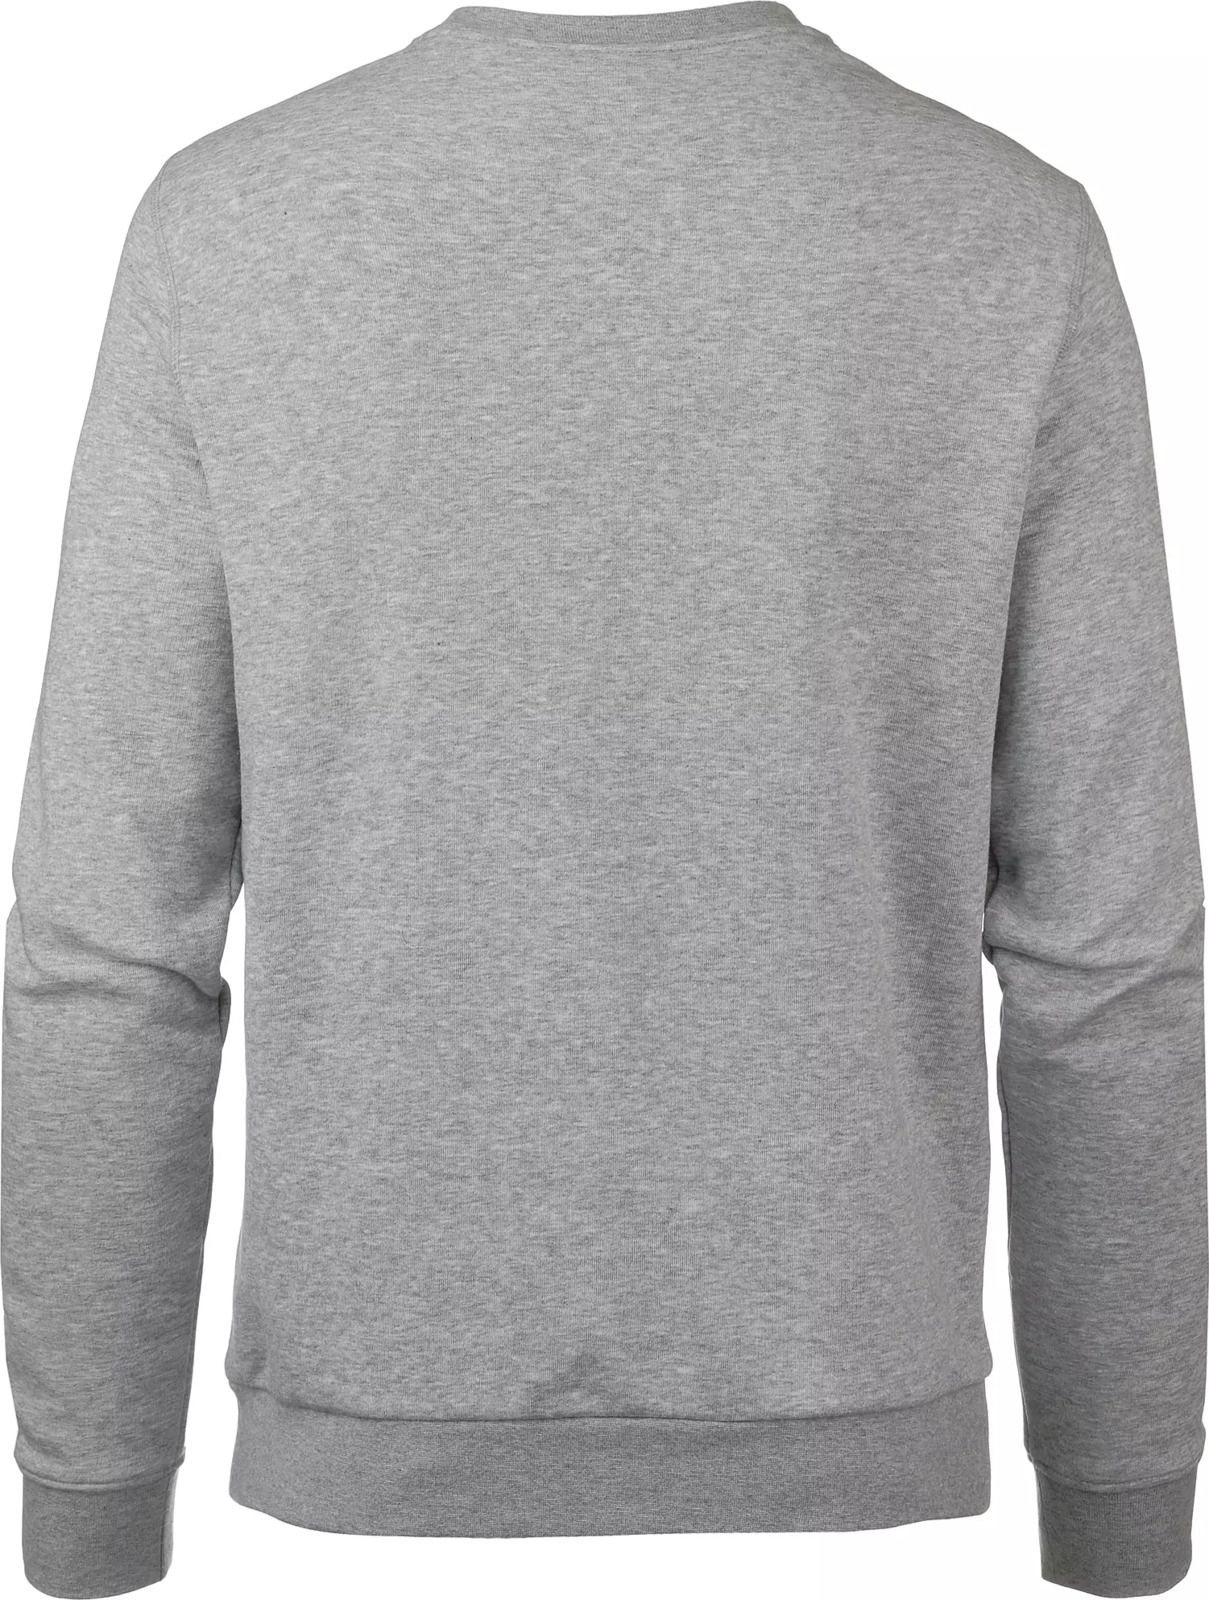   Jack Wolfskin Logo Sweatshirt M, : -. 5018891-6111.  S (42/44)